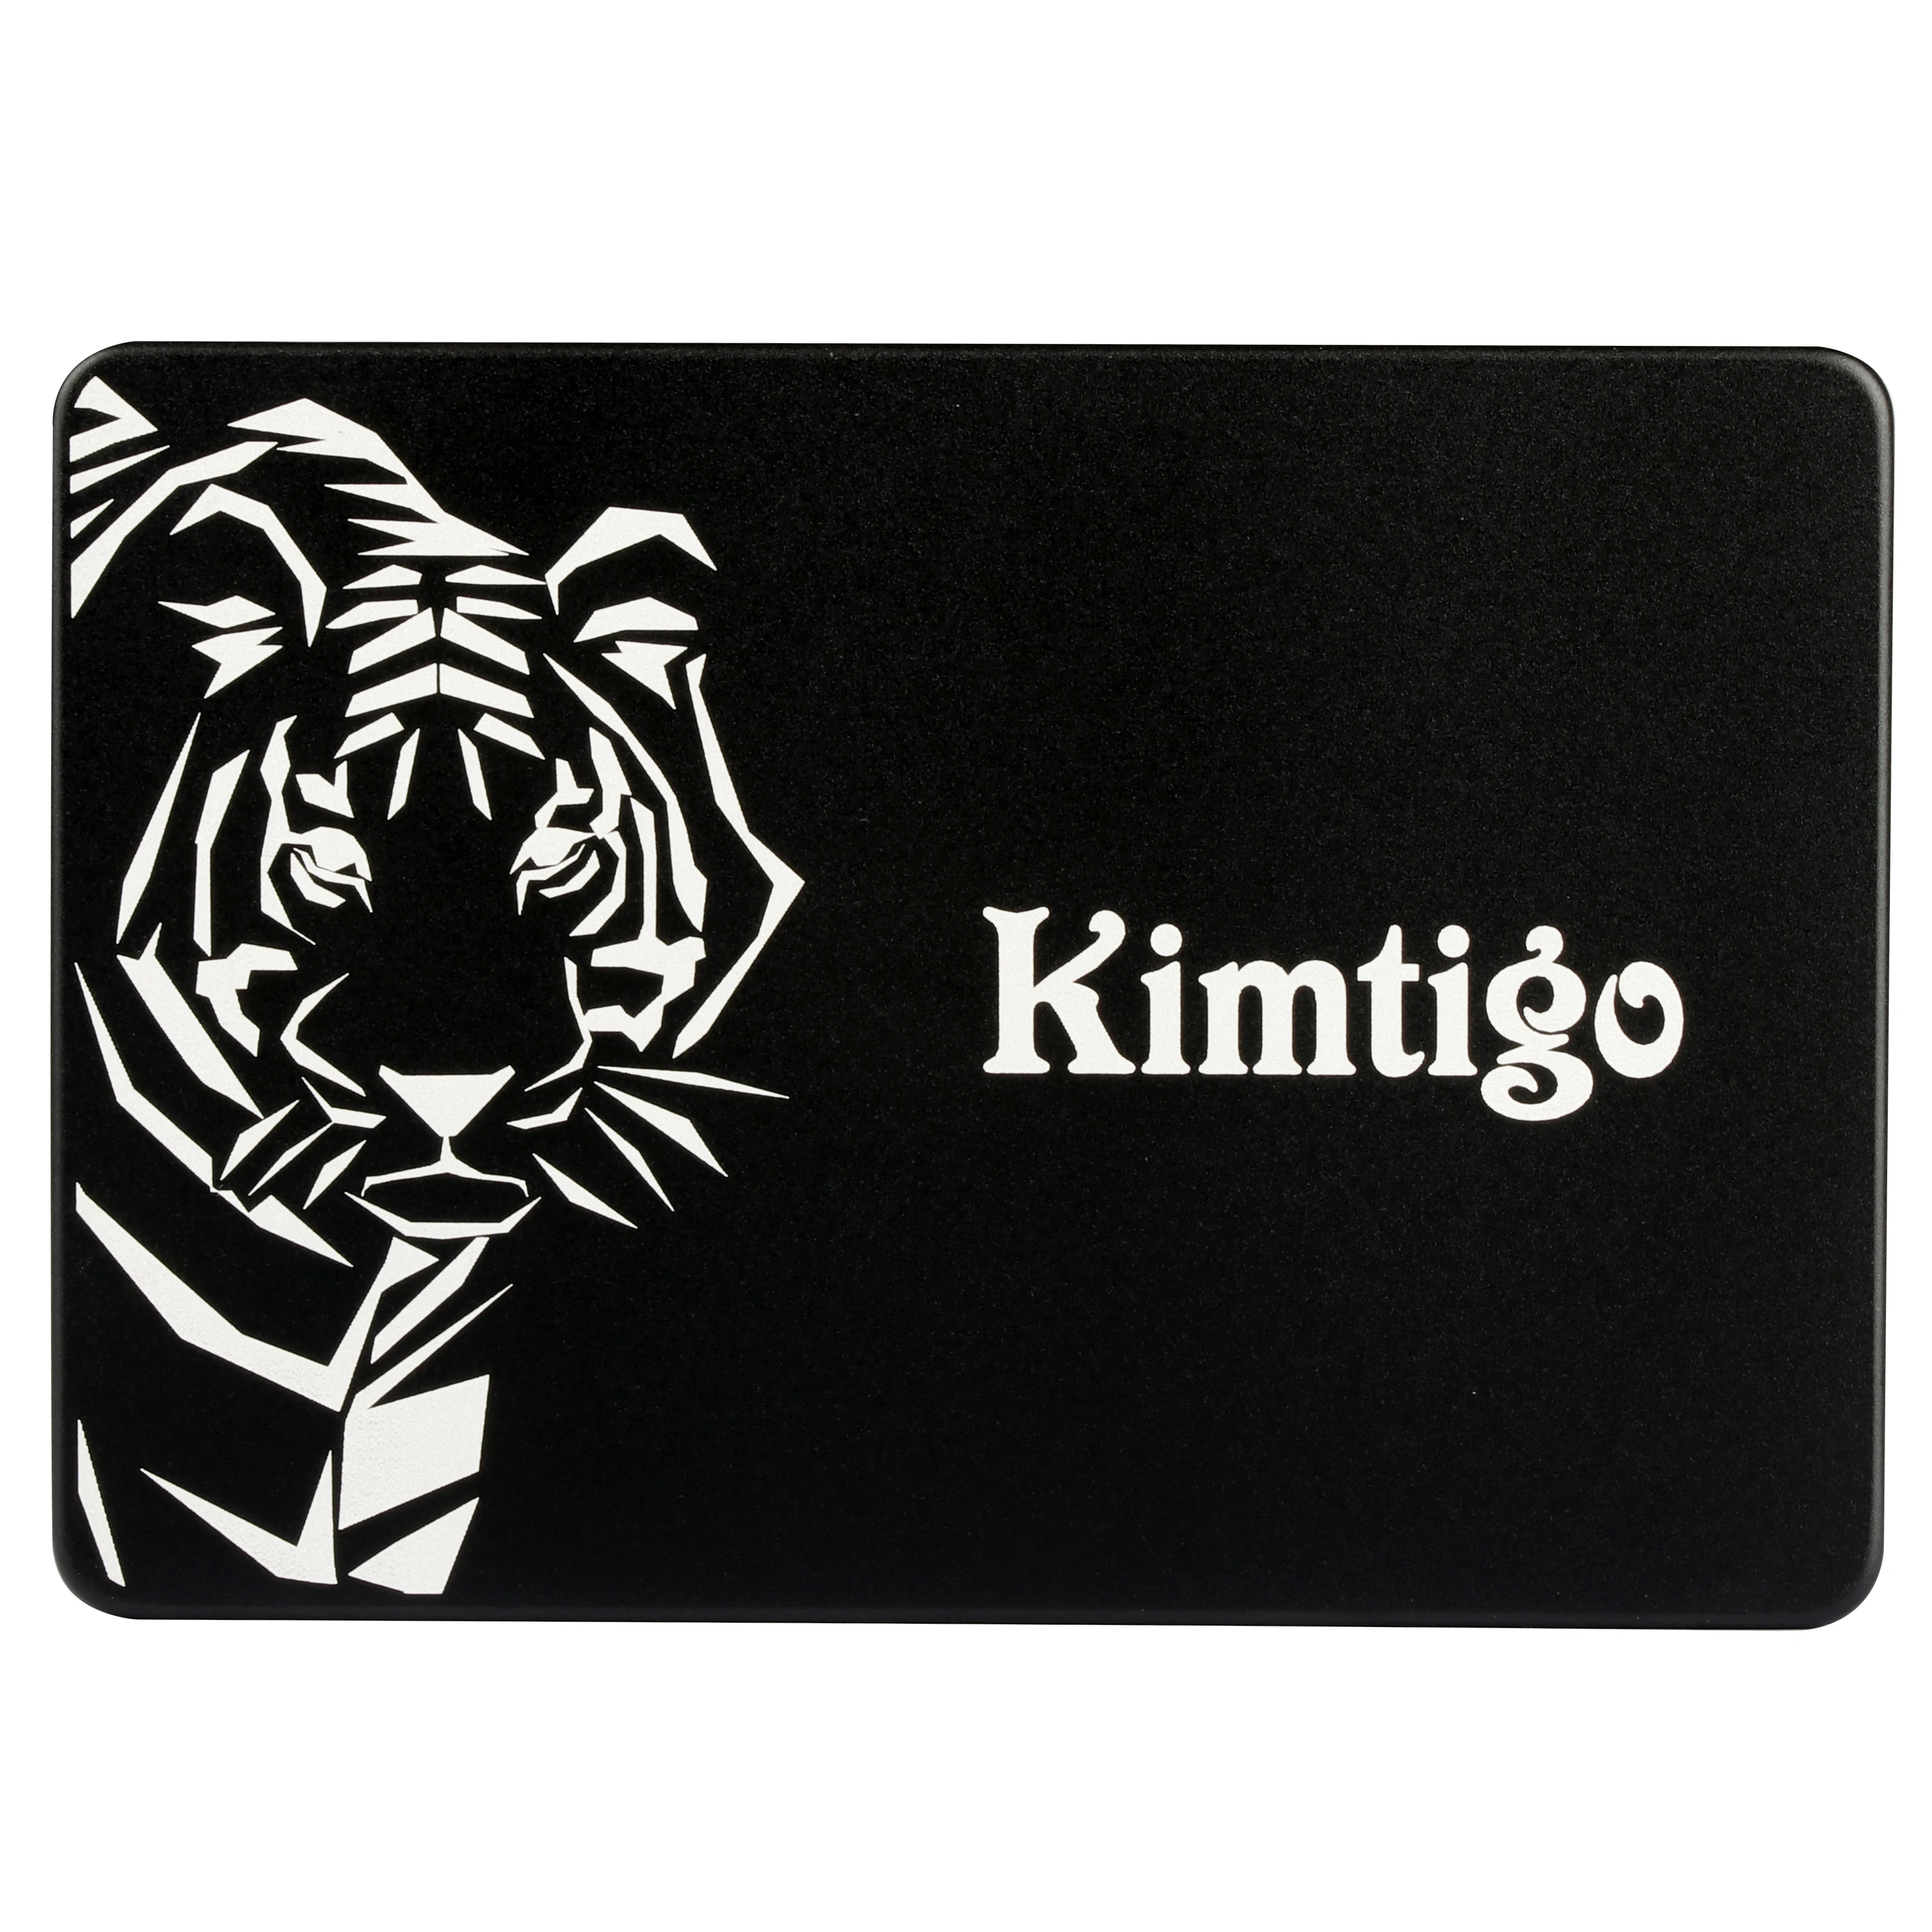 

Kimtigo manufacturer fast speed solid state drive ssd internal drive SATA3 2.5inch 120GB/240GB/480GB/960GB, Black